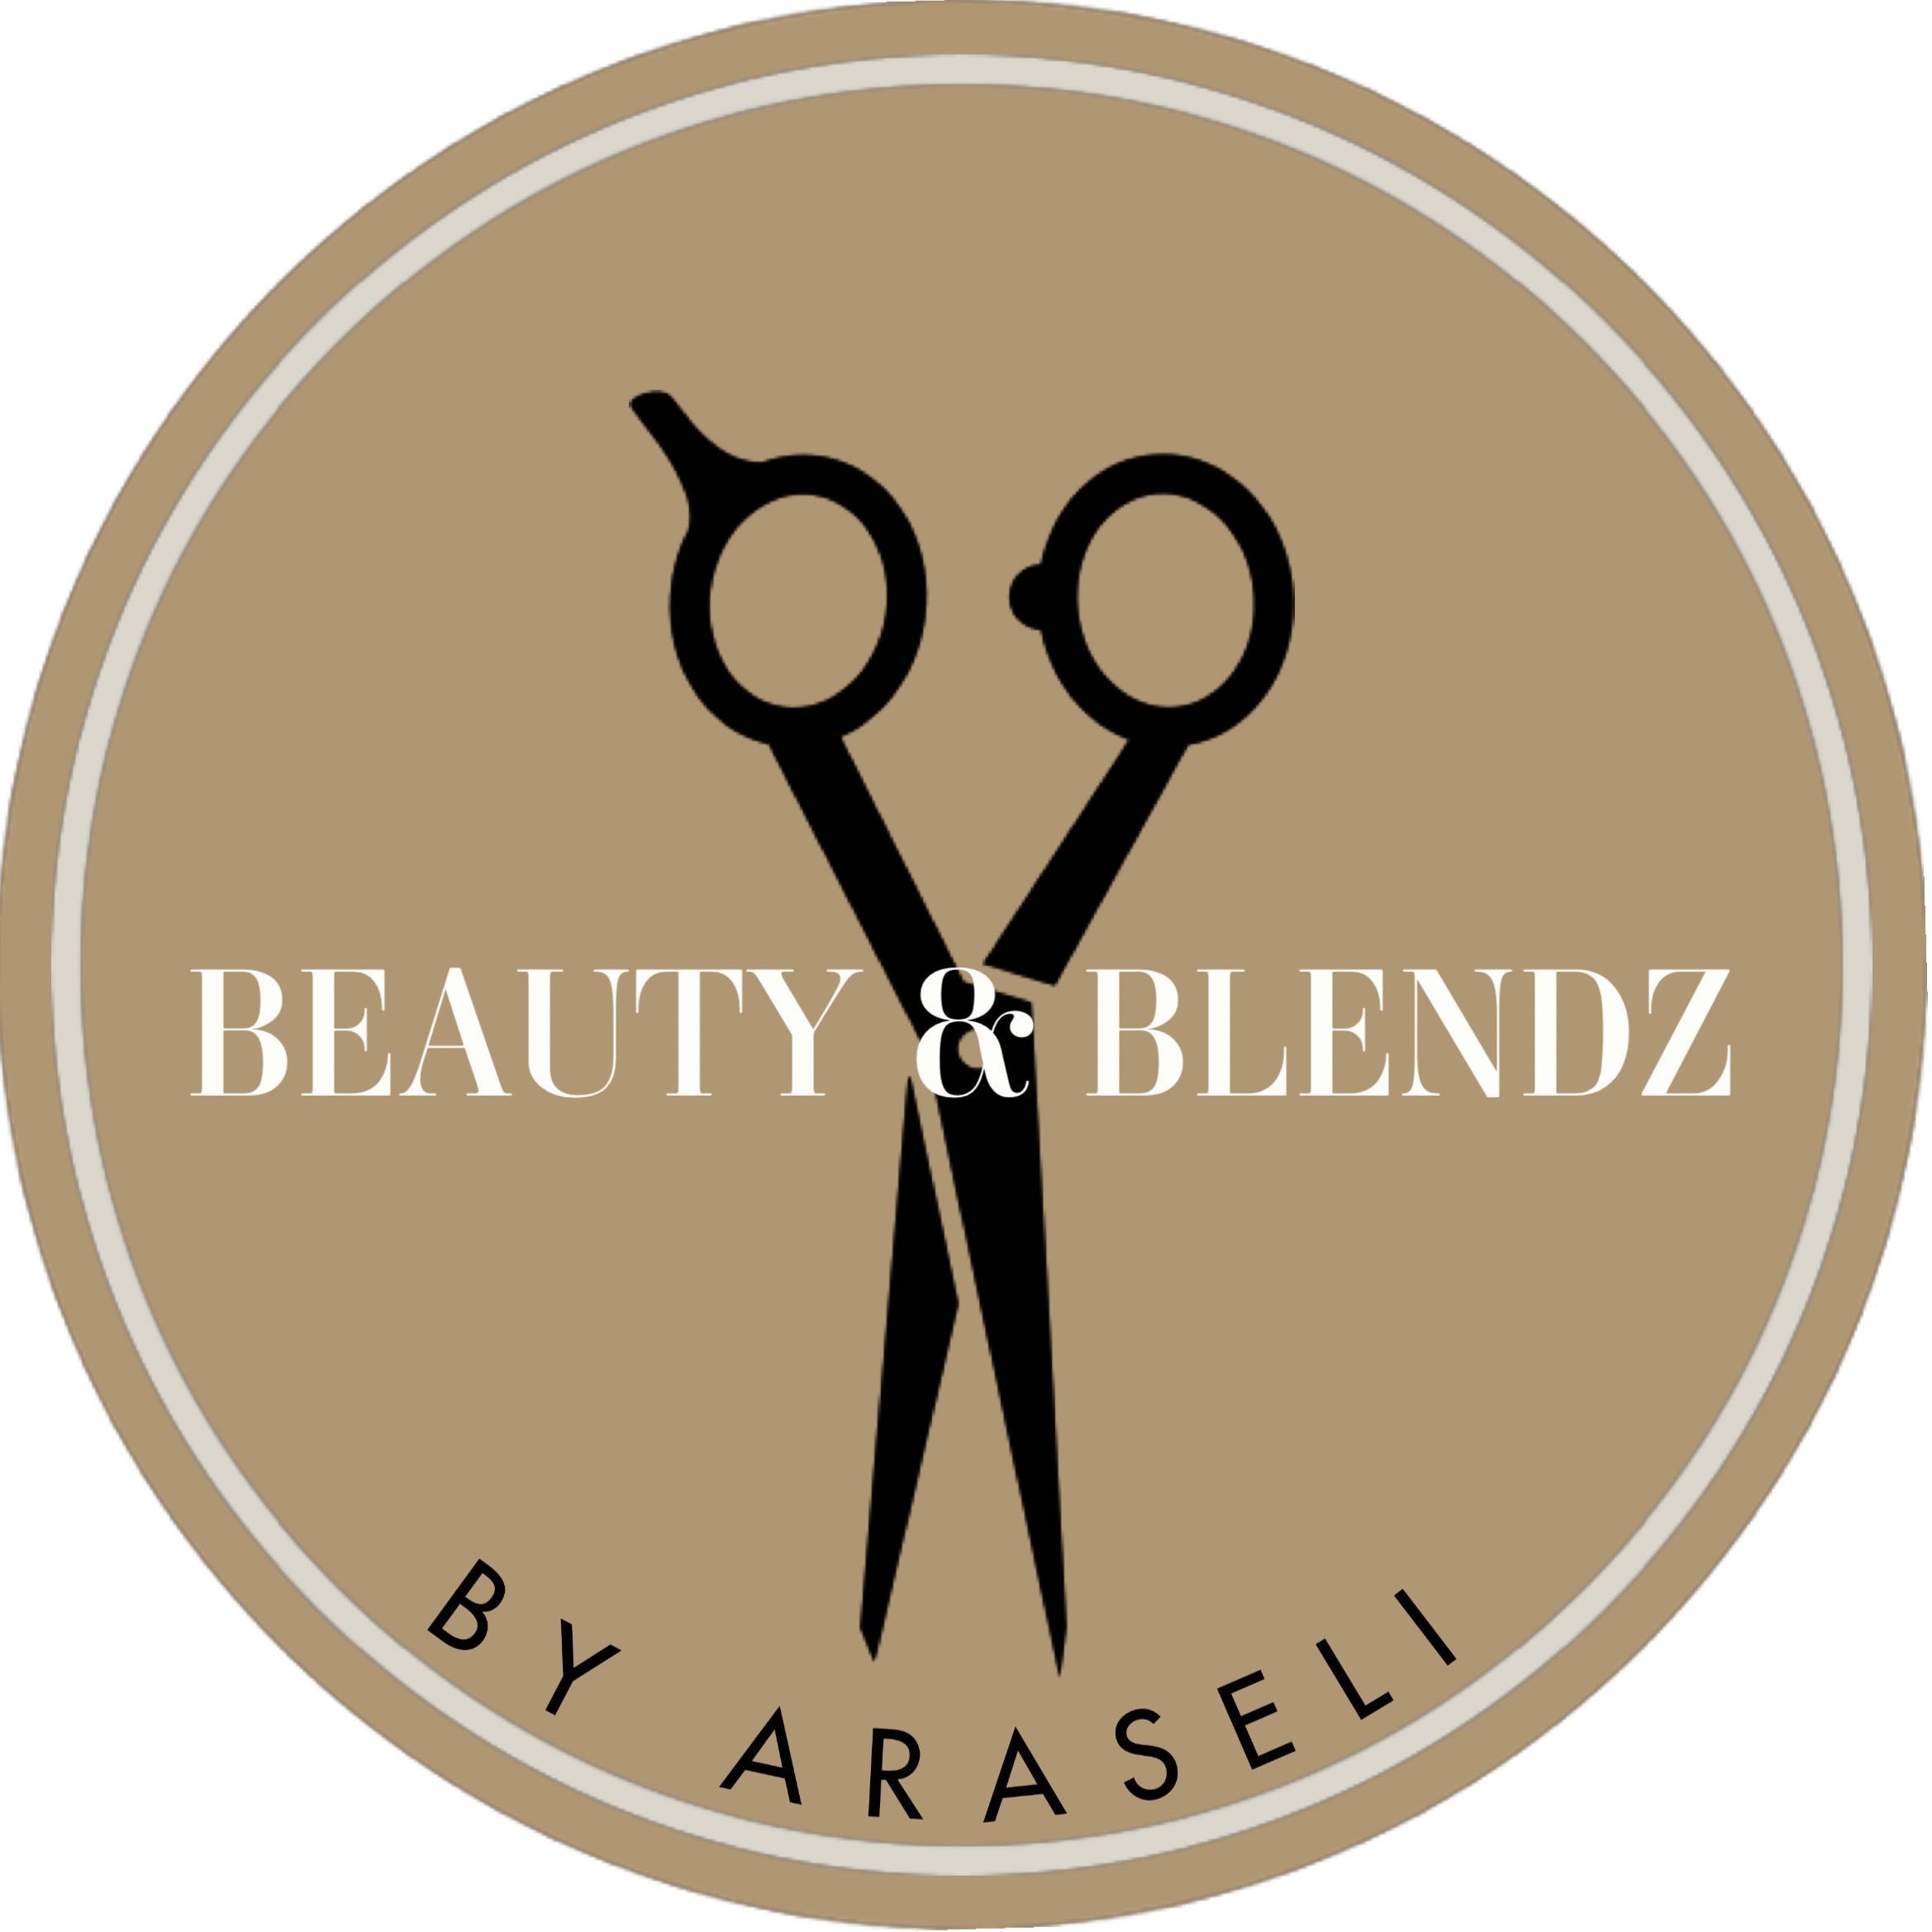 Beauty&Blendz By Araseli, 200 E. Marshall Howard blvd, Littlefield, 79339